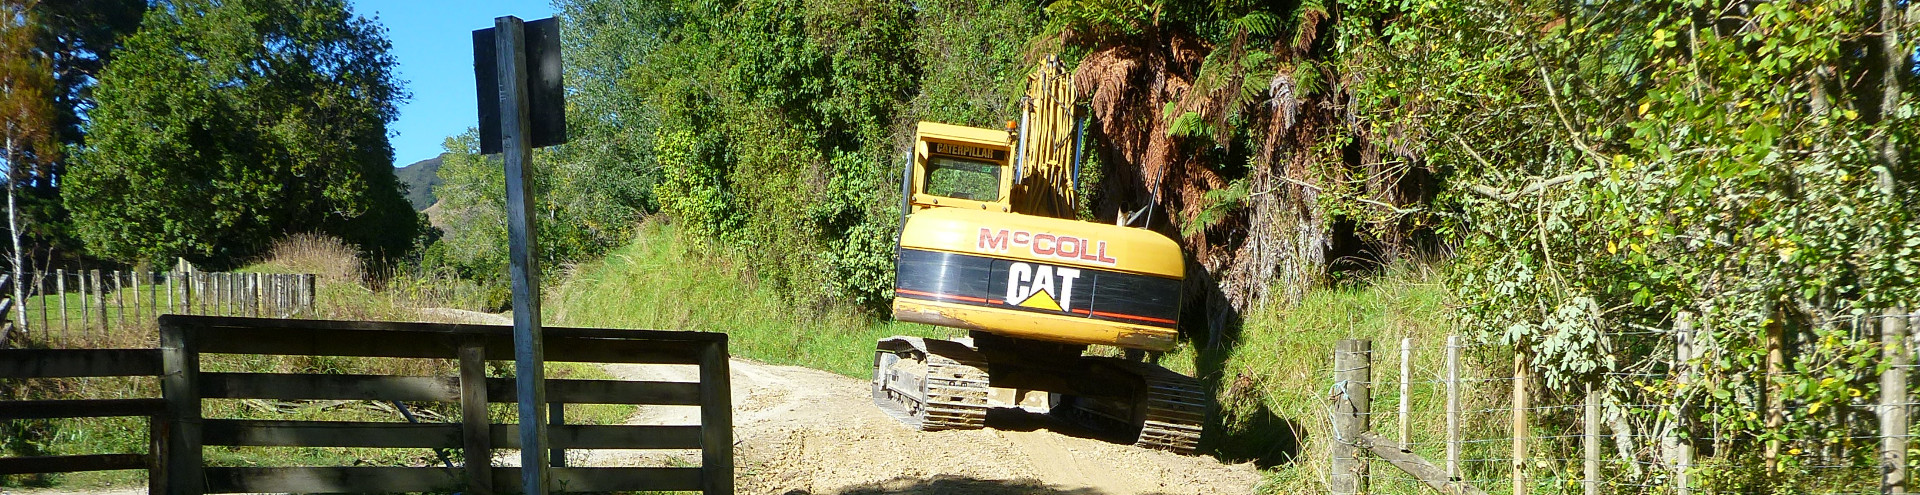 2013 Kapara Track repair Waitotara Road